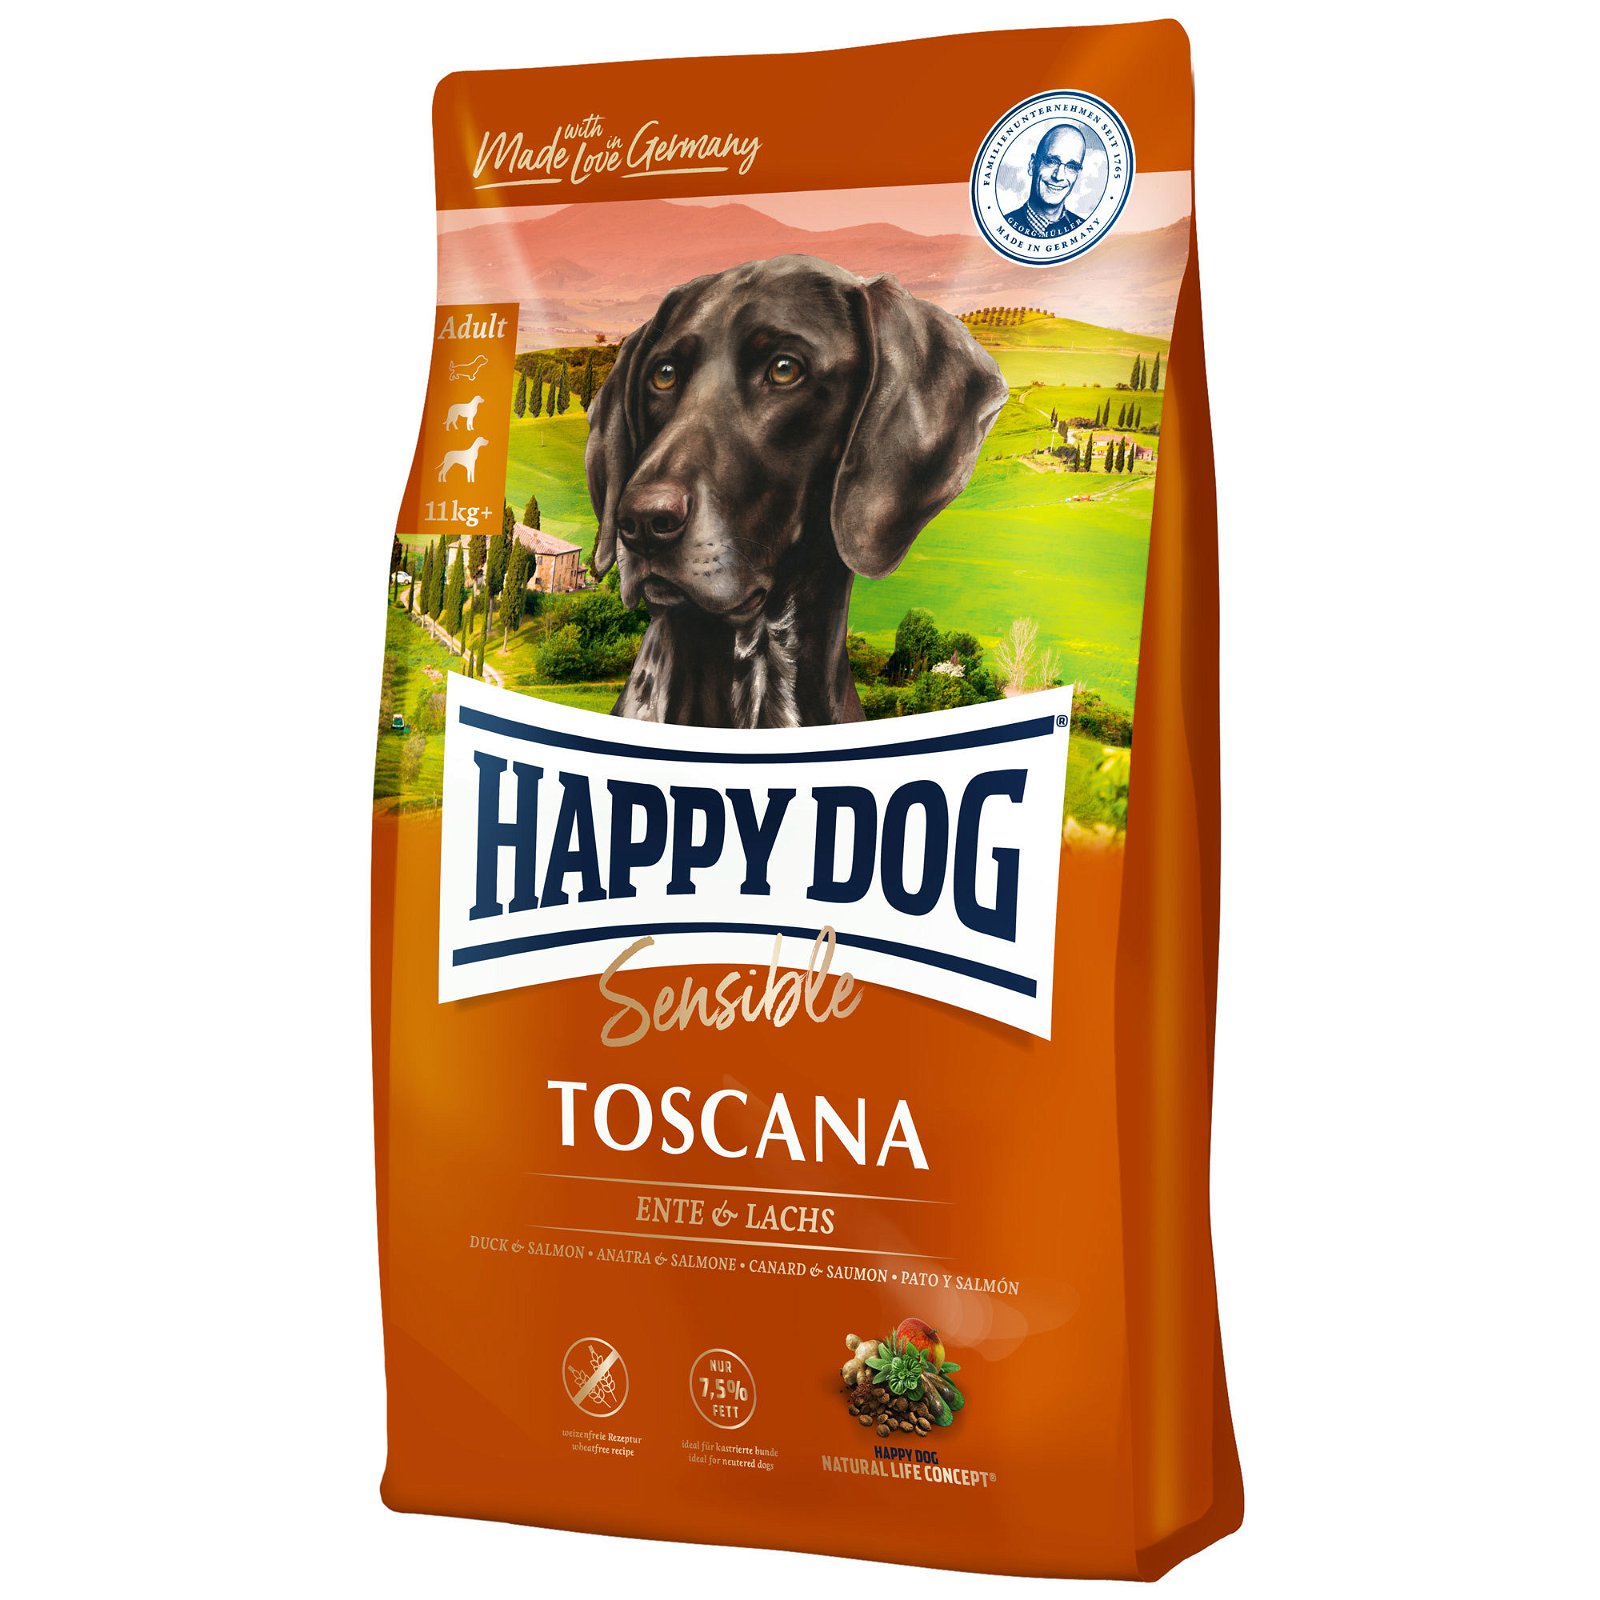 Happy Dog Sensible Toscana Ente & Lachs, 300 g